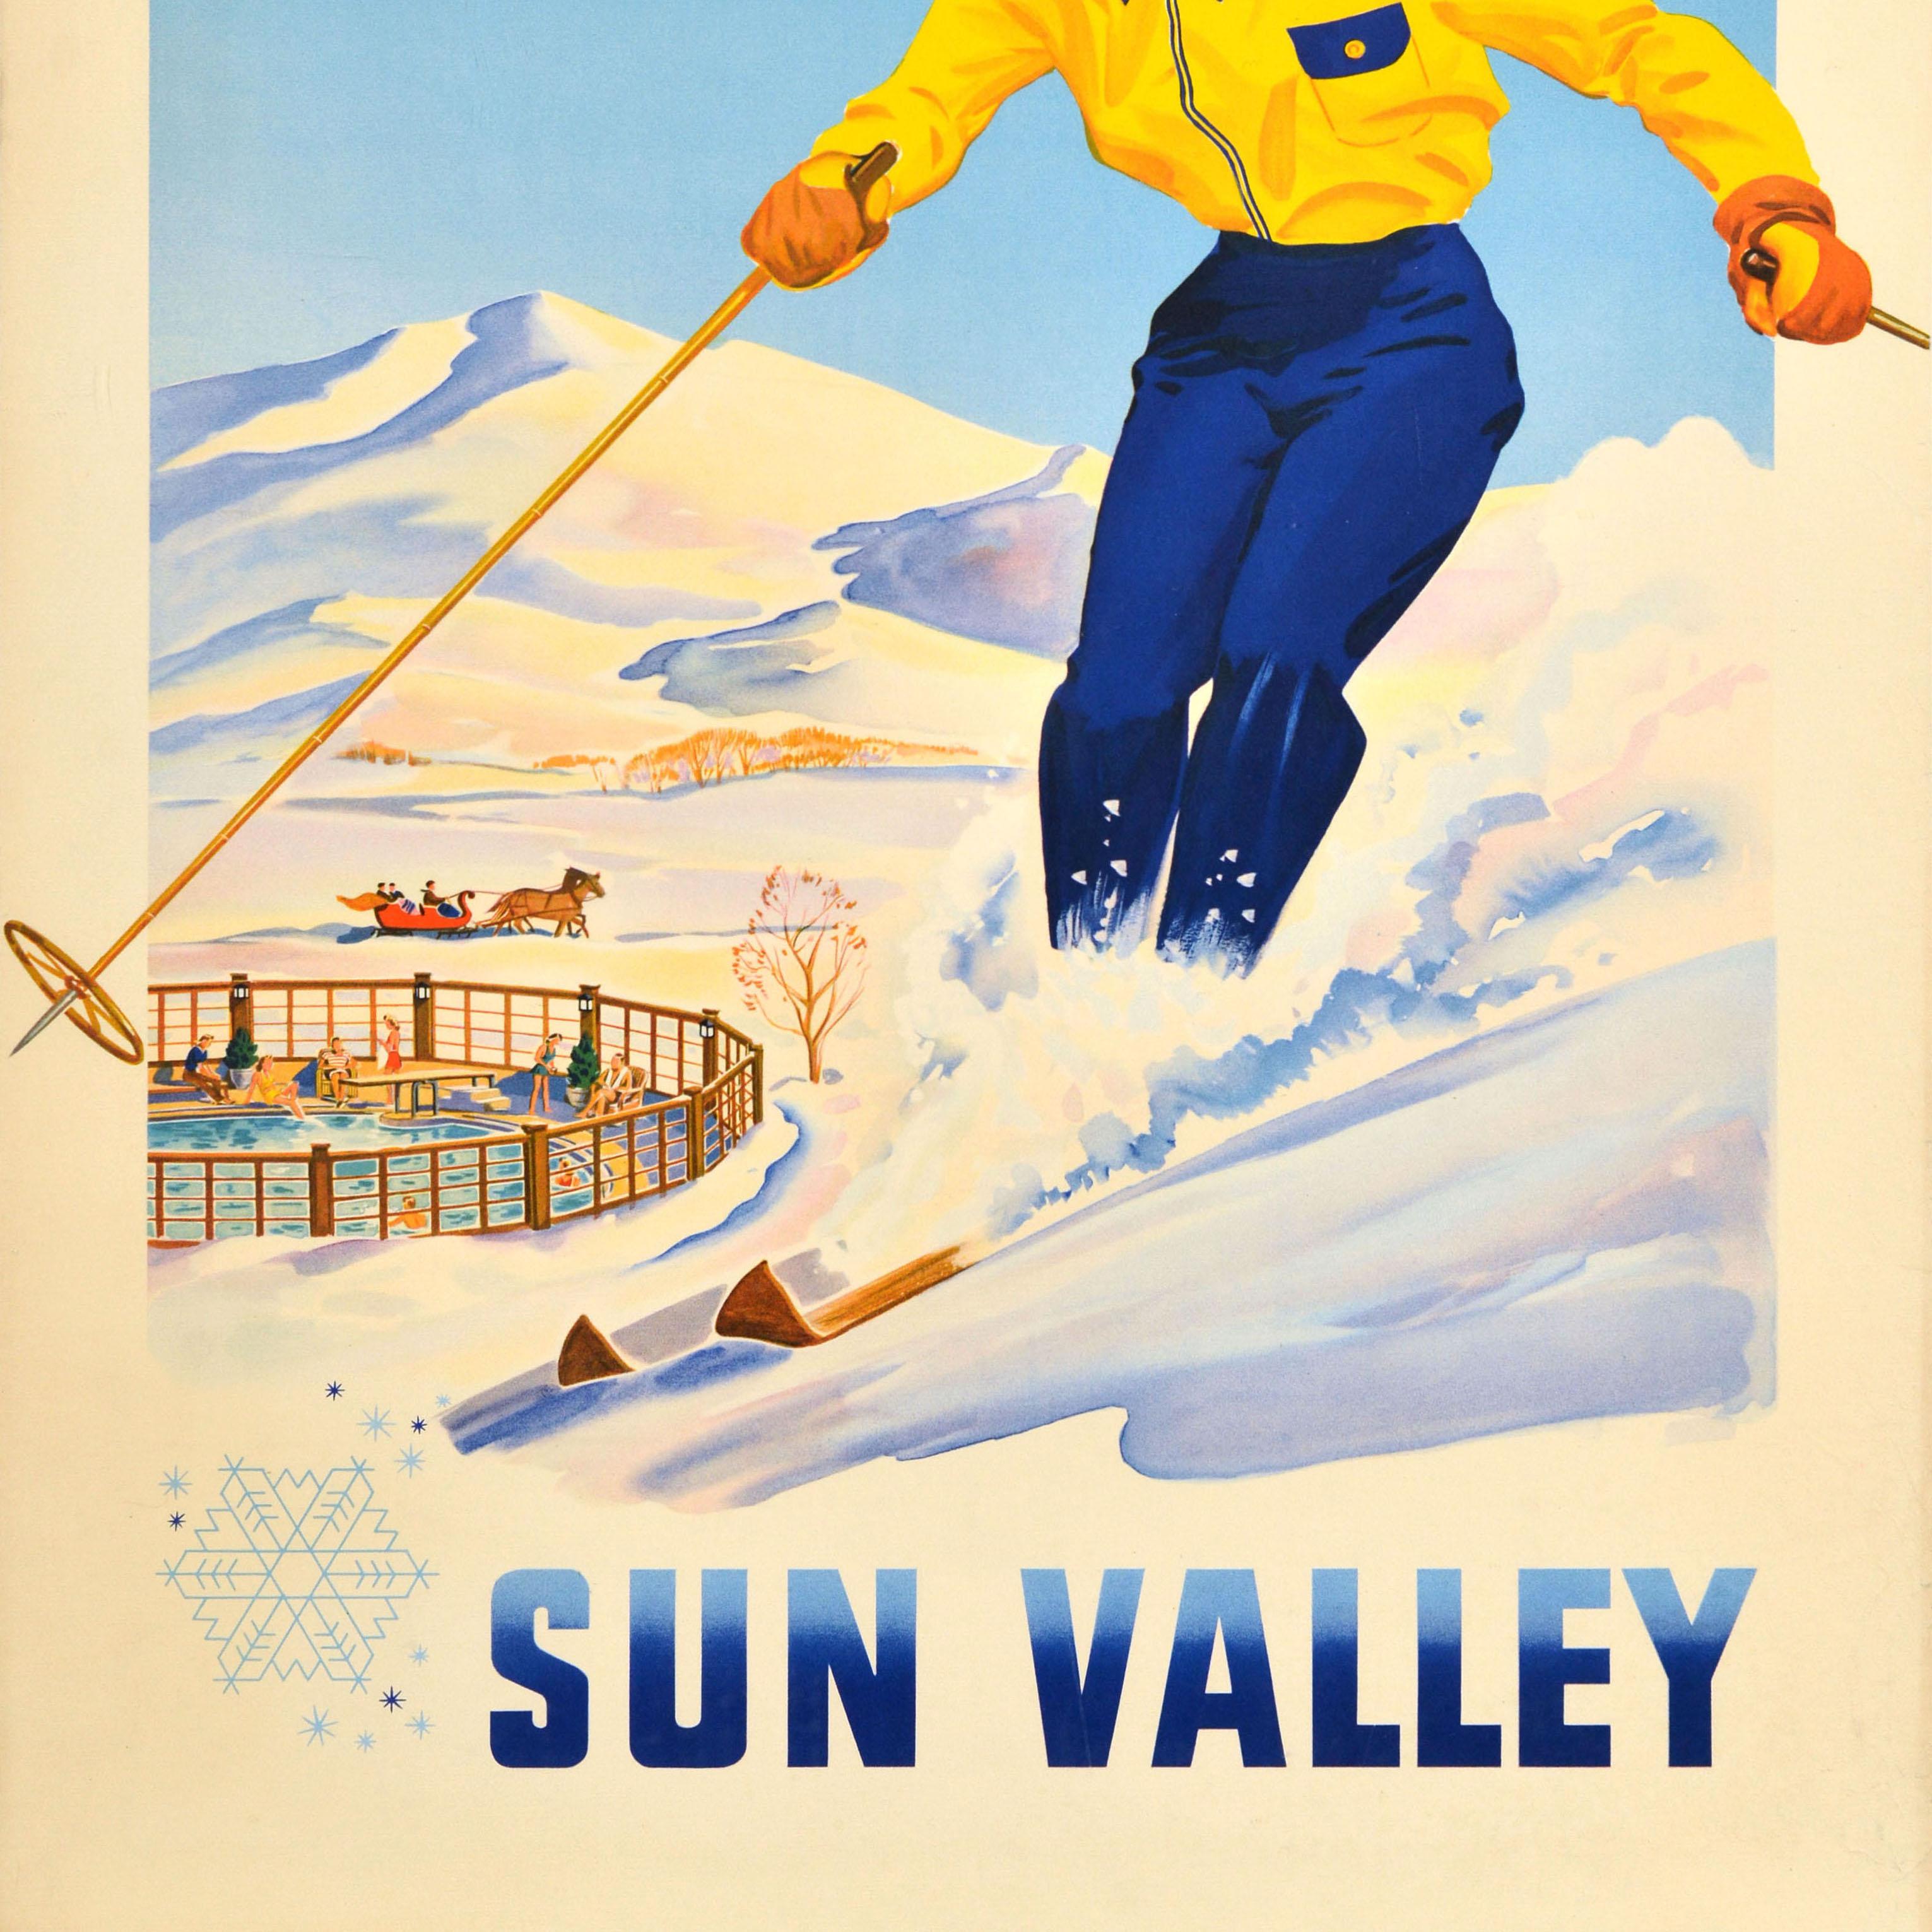 Original Vintage Wintersport Reiseplakat - Dieser Winter Sun Valley - mit einem großen Bild von einer lächelnden Dame in einem gelben und blauen Skianzug Skifahren auf einem verschneiten Hang mit der Geschwindigkeit mit Menschen genießen Schwimmen